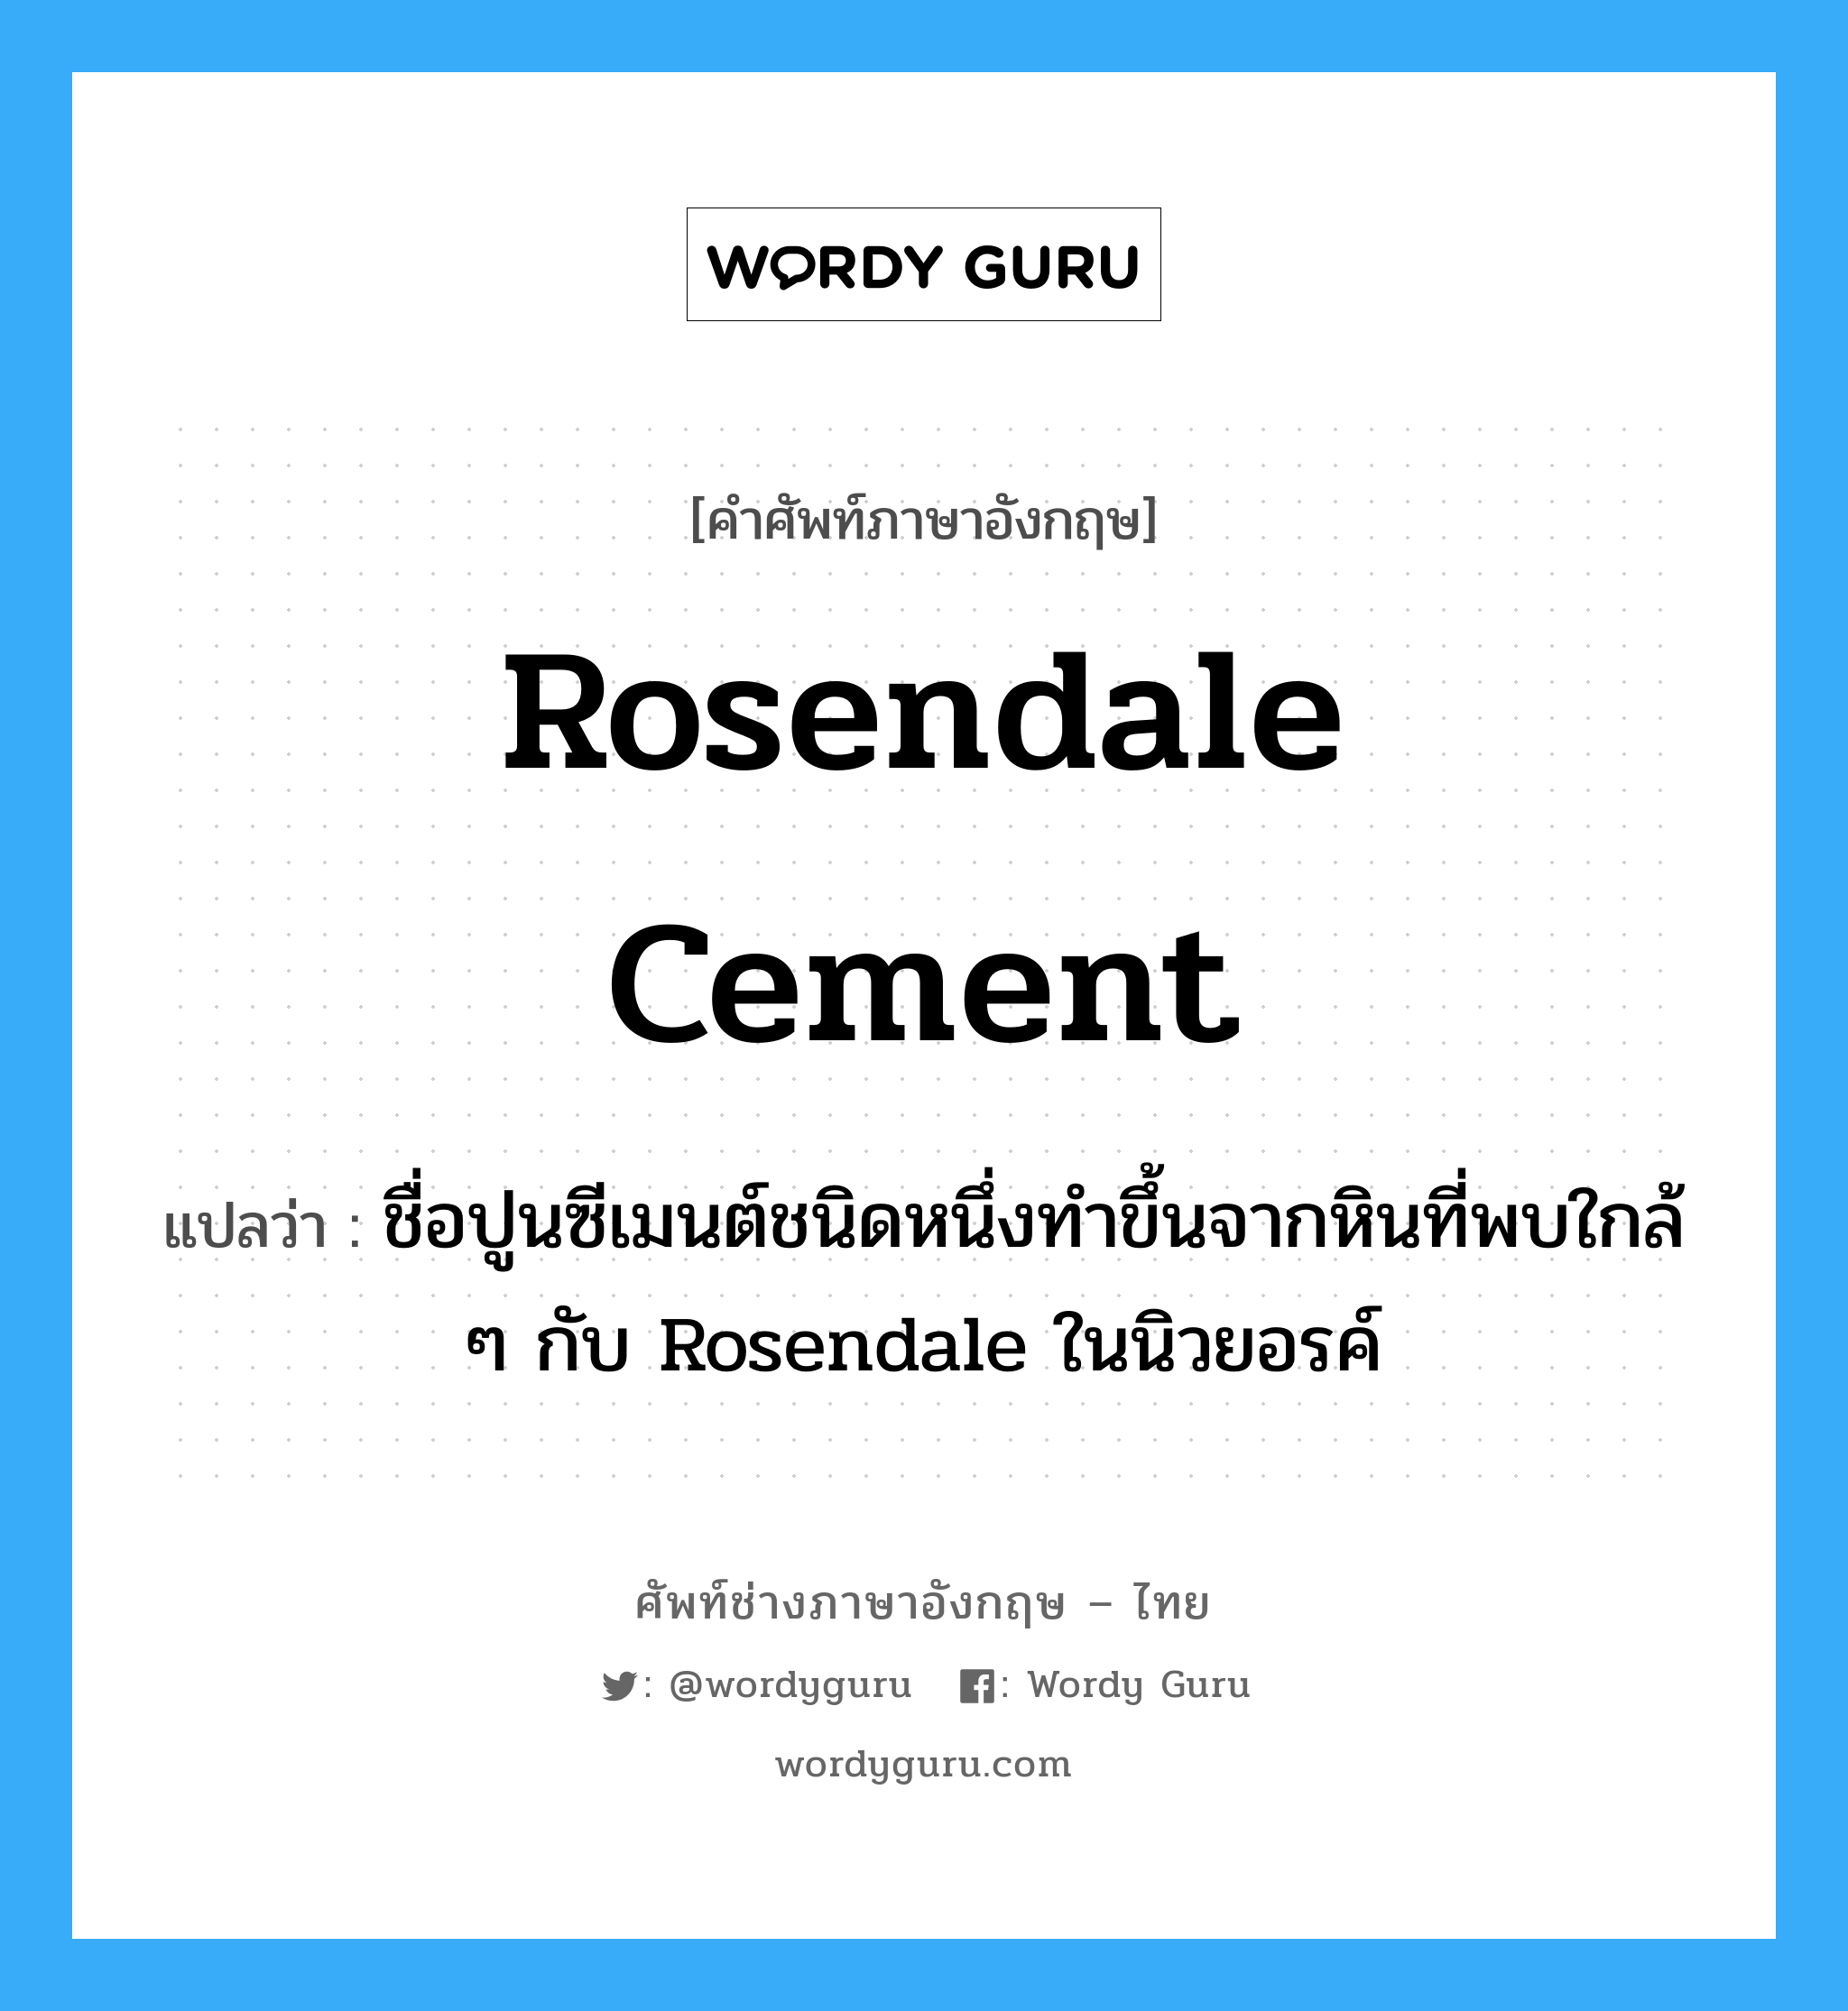 ชื่อปูนซีเมนต์ชนิดหนึ่งทำขึ้นจากหินที่พบใกล้ ๆ กับ Rosendale ในนิวยอรค์ ภาษาอังกฤษ?, คำศัพท์ช่างภาษาอังกฤษ - ไทย ชื่อปูนซีเมนต์ชนิดหนึ่งทำขึ้นจากหินที่พบใกล้ ๆ กับ Rosendale ในนิวยอรค์ คำศัพท์ภาษาอังกฤษ ชื่อปูนซีเมนต์ชนิดหนึ่งทำขึ้นจากหินที่พบใกล้ ๆ กับ Rosendale ในนิวยอรค์ แปลว่า Rosendale cement